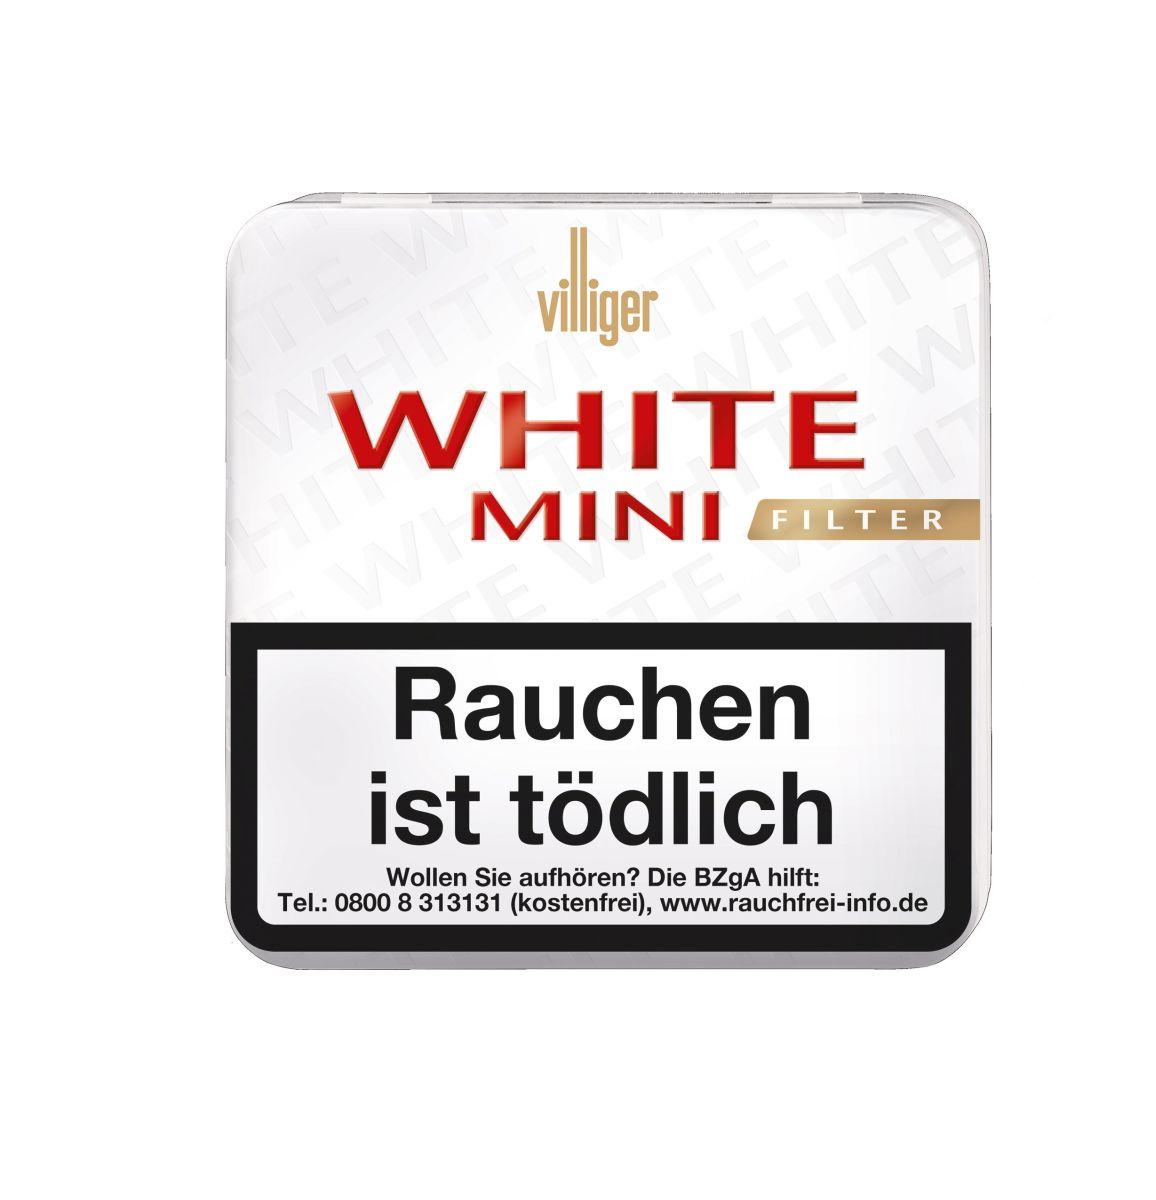 Villiger White Mini Filter Sumatra